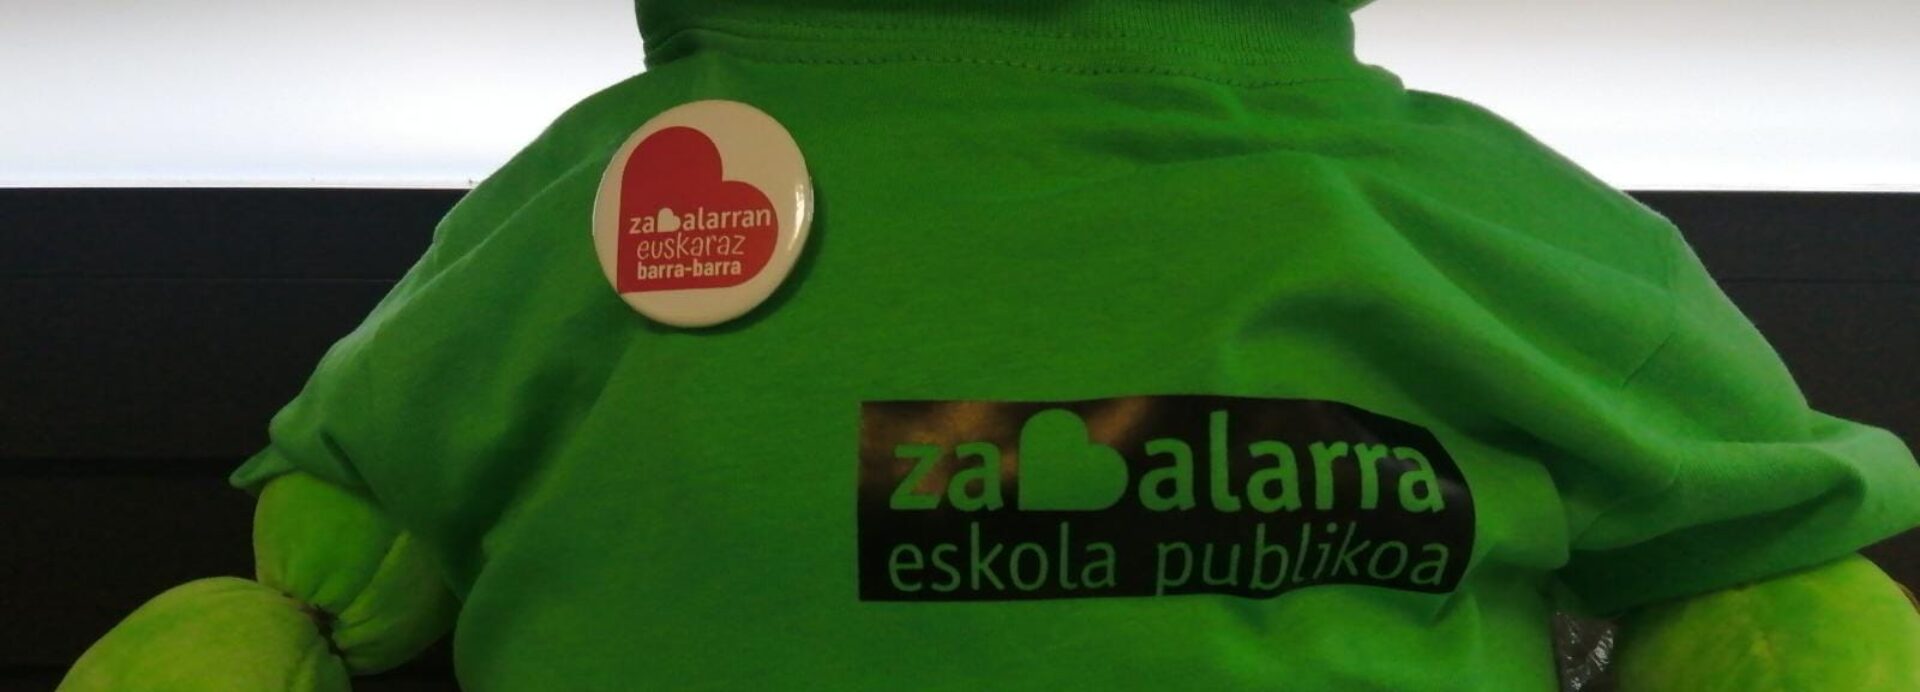 Zabalarra Eskola